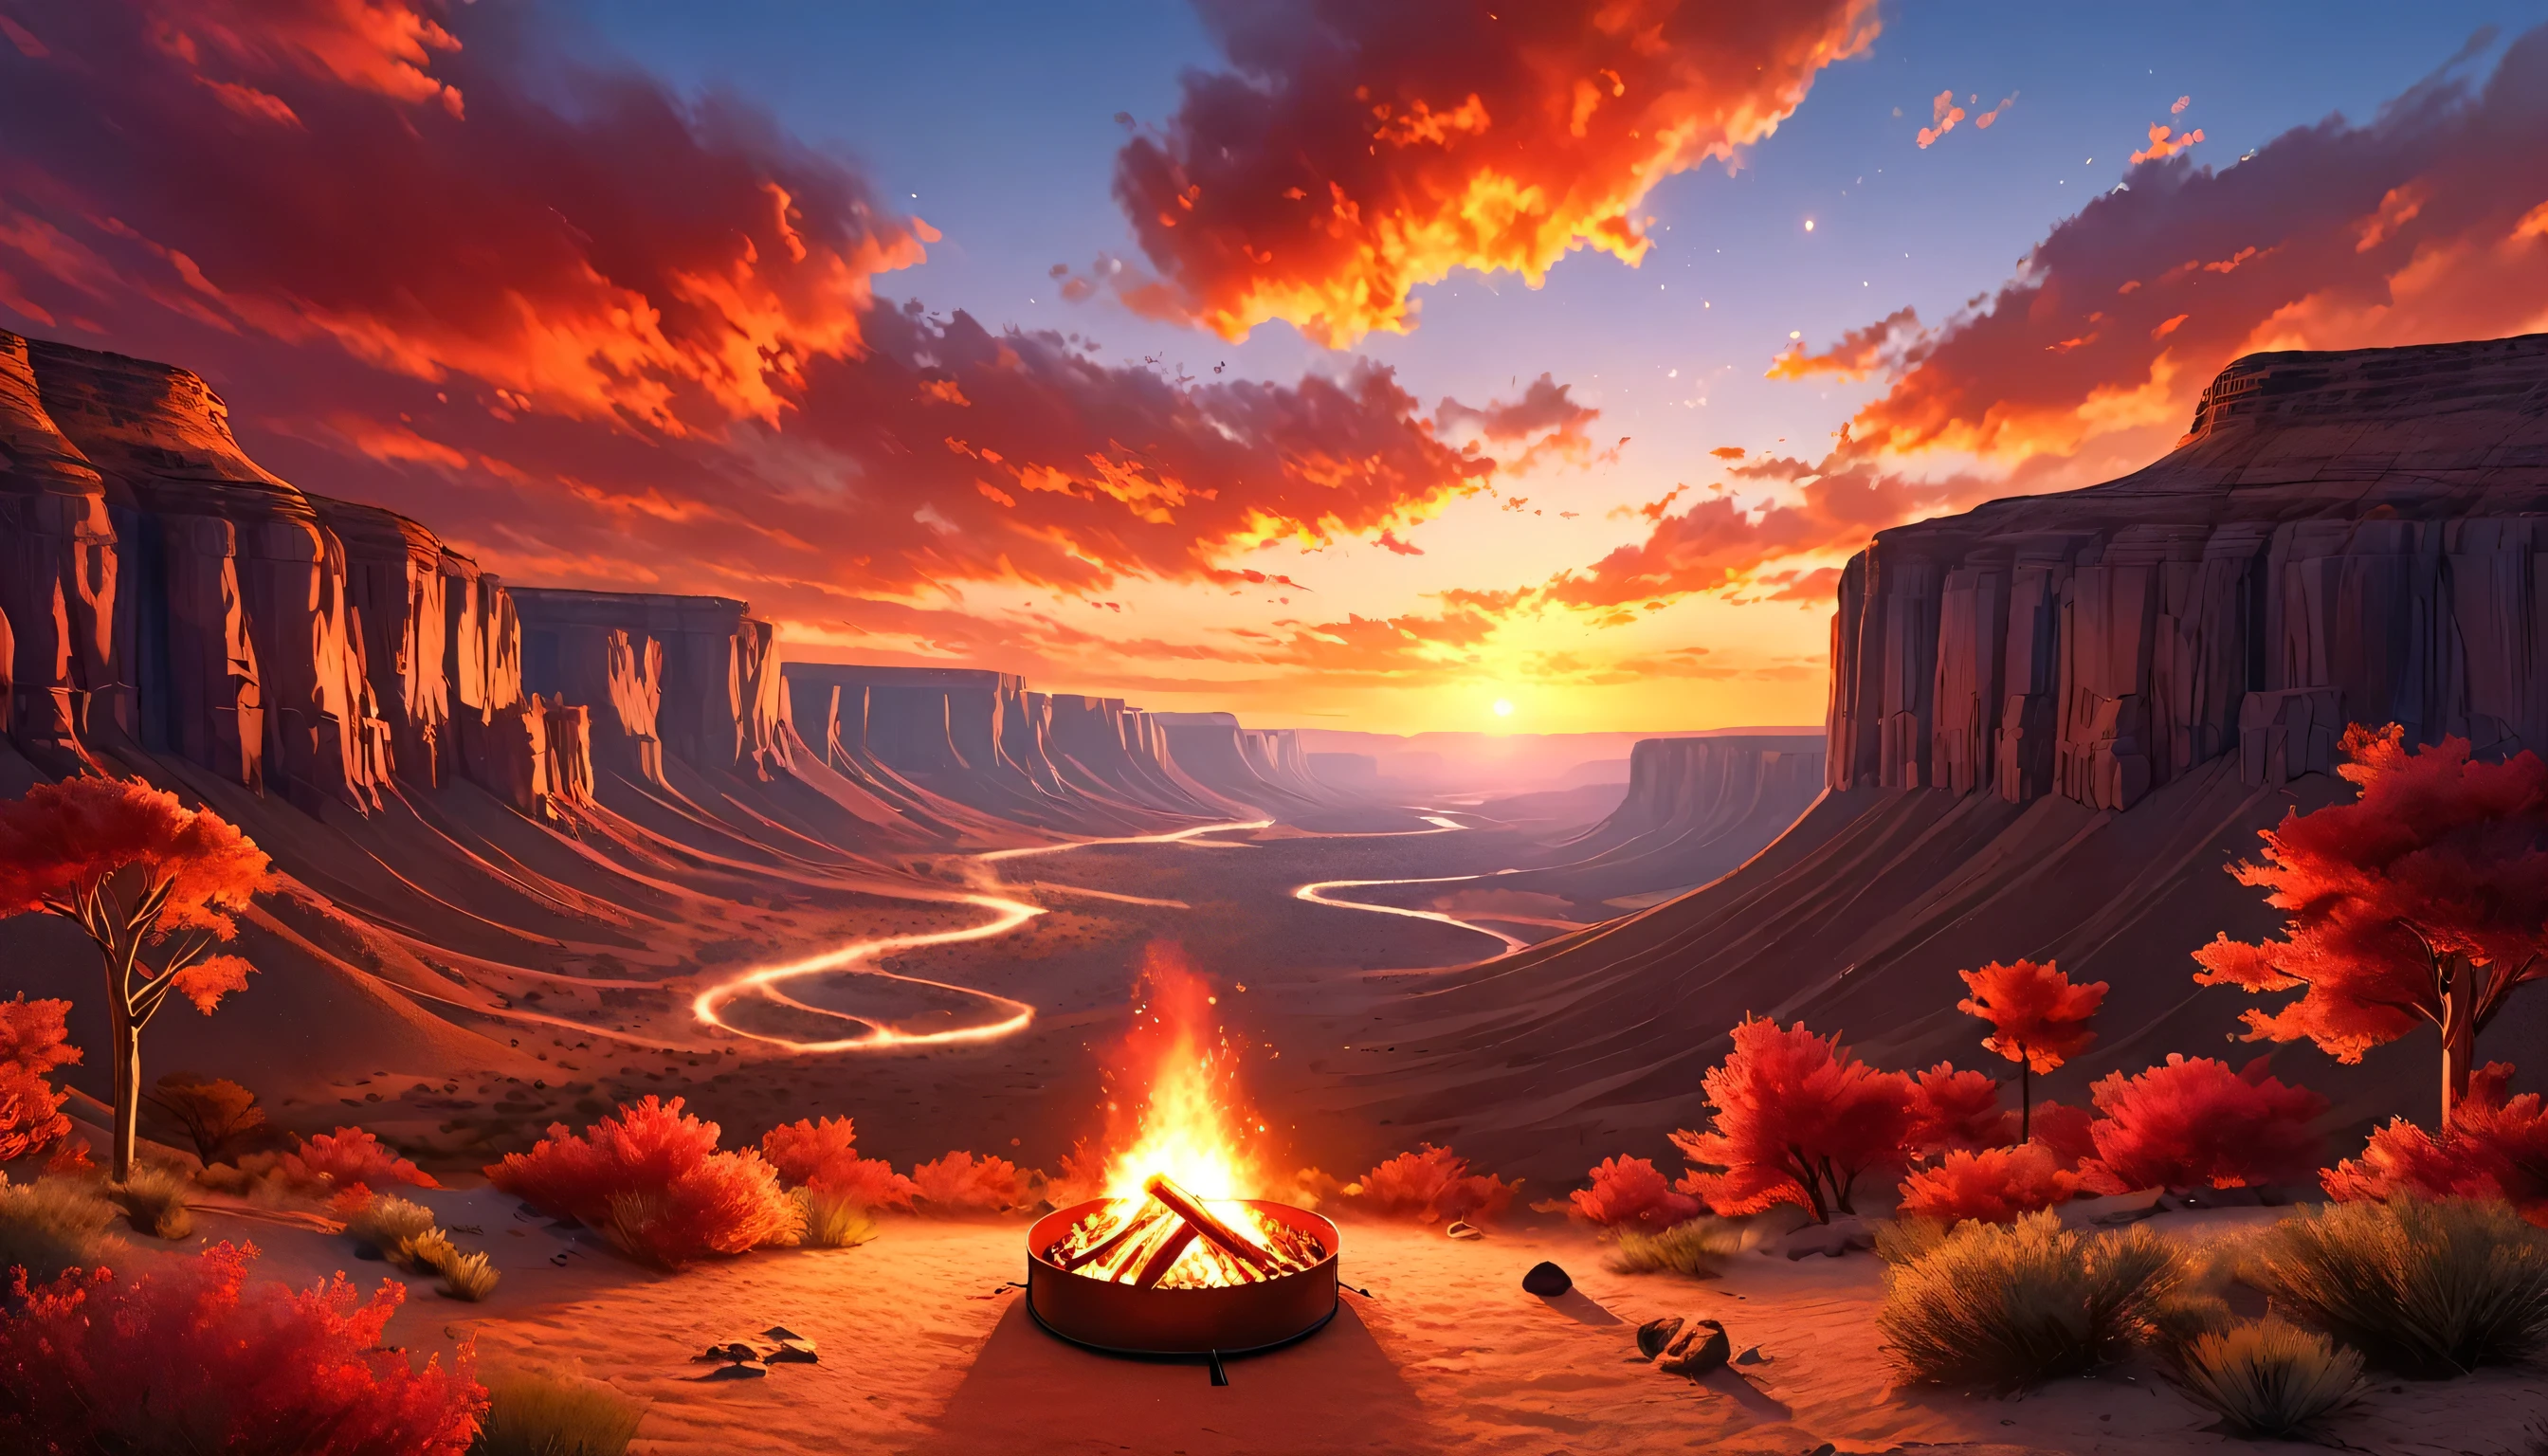 アラフェド, キャンプの写真 (テント: 1.2) そして小さい (キャンプファイヤー: 1,2), 砂漠の山頂で, 日没の空は様々な色合いに  (赤: 1.1), (オレンジ: 1.1), (アズール: 1.1) (紫:1.1) 火災現場から煙が上がっている, 砂漠の峡谷と渓谷の壮大な景色が見える, 地平線上にはまばらな木々がある, それは平穏な時間です, 平和, そしてリラクゼーション, 最高品質, 16k,  フォトリアリズム, ナショナルジオグラフィック賞受賞写真撮影, 超ワイドショット, レイジングネビュラ, レディシャドウ